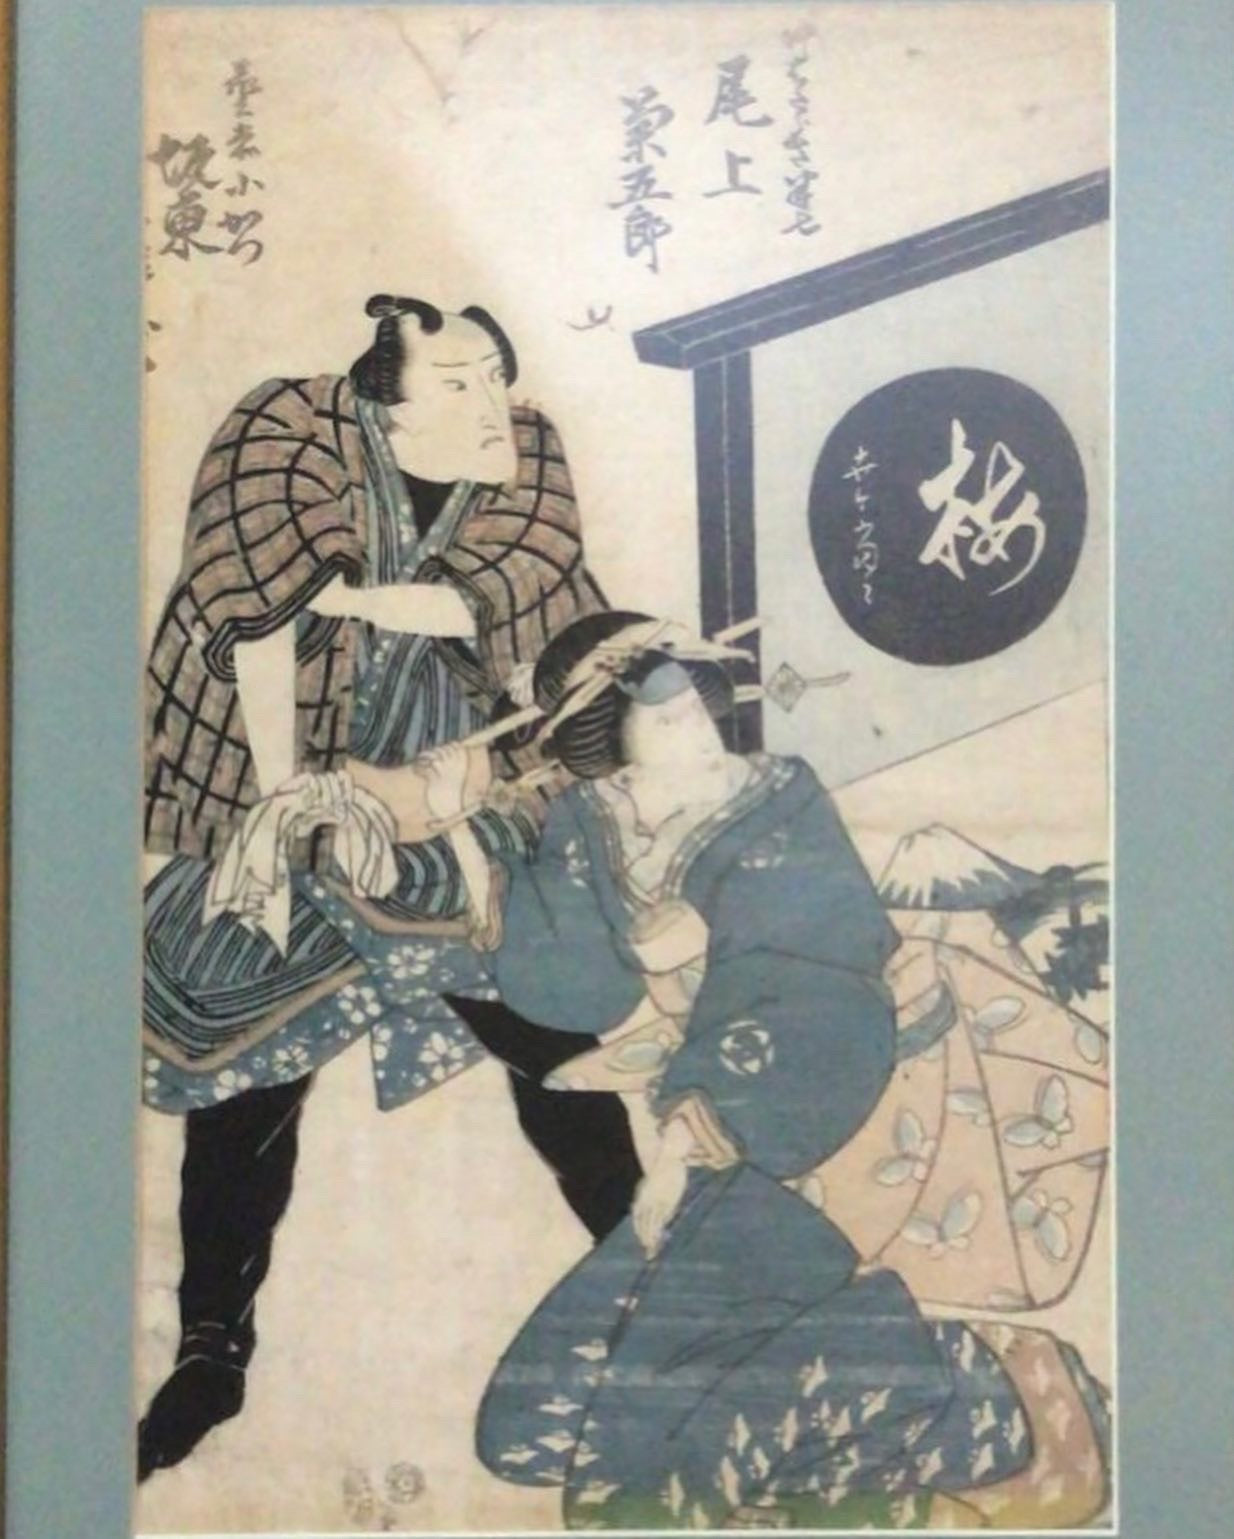 Original Japanese Woodblock print. Utamaro (1750 - 1806).